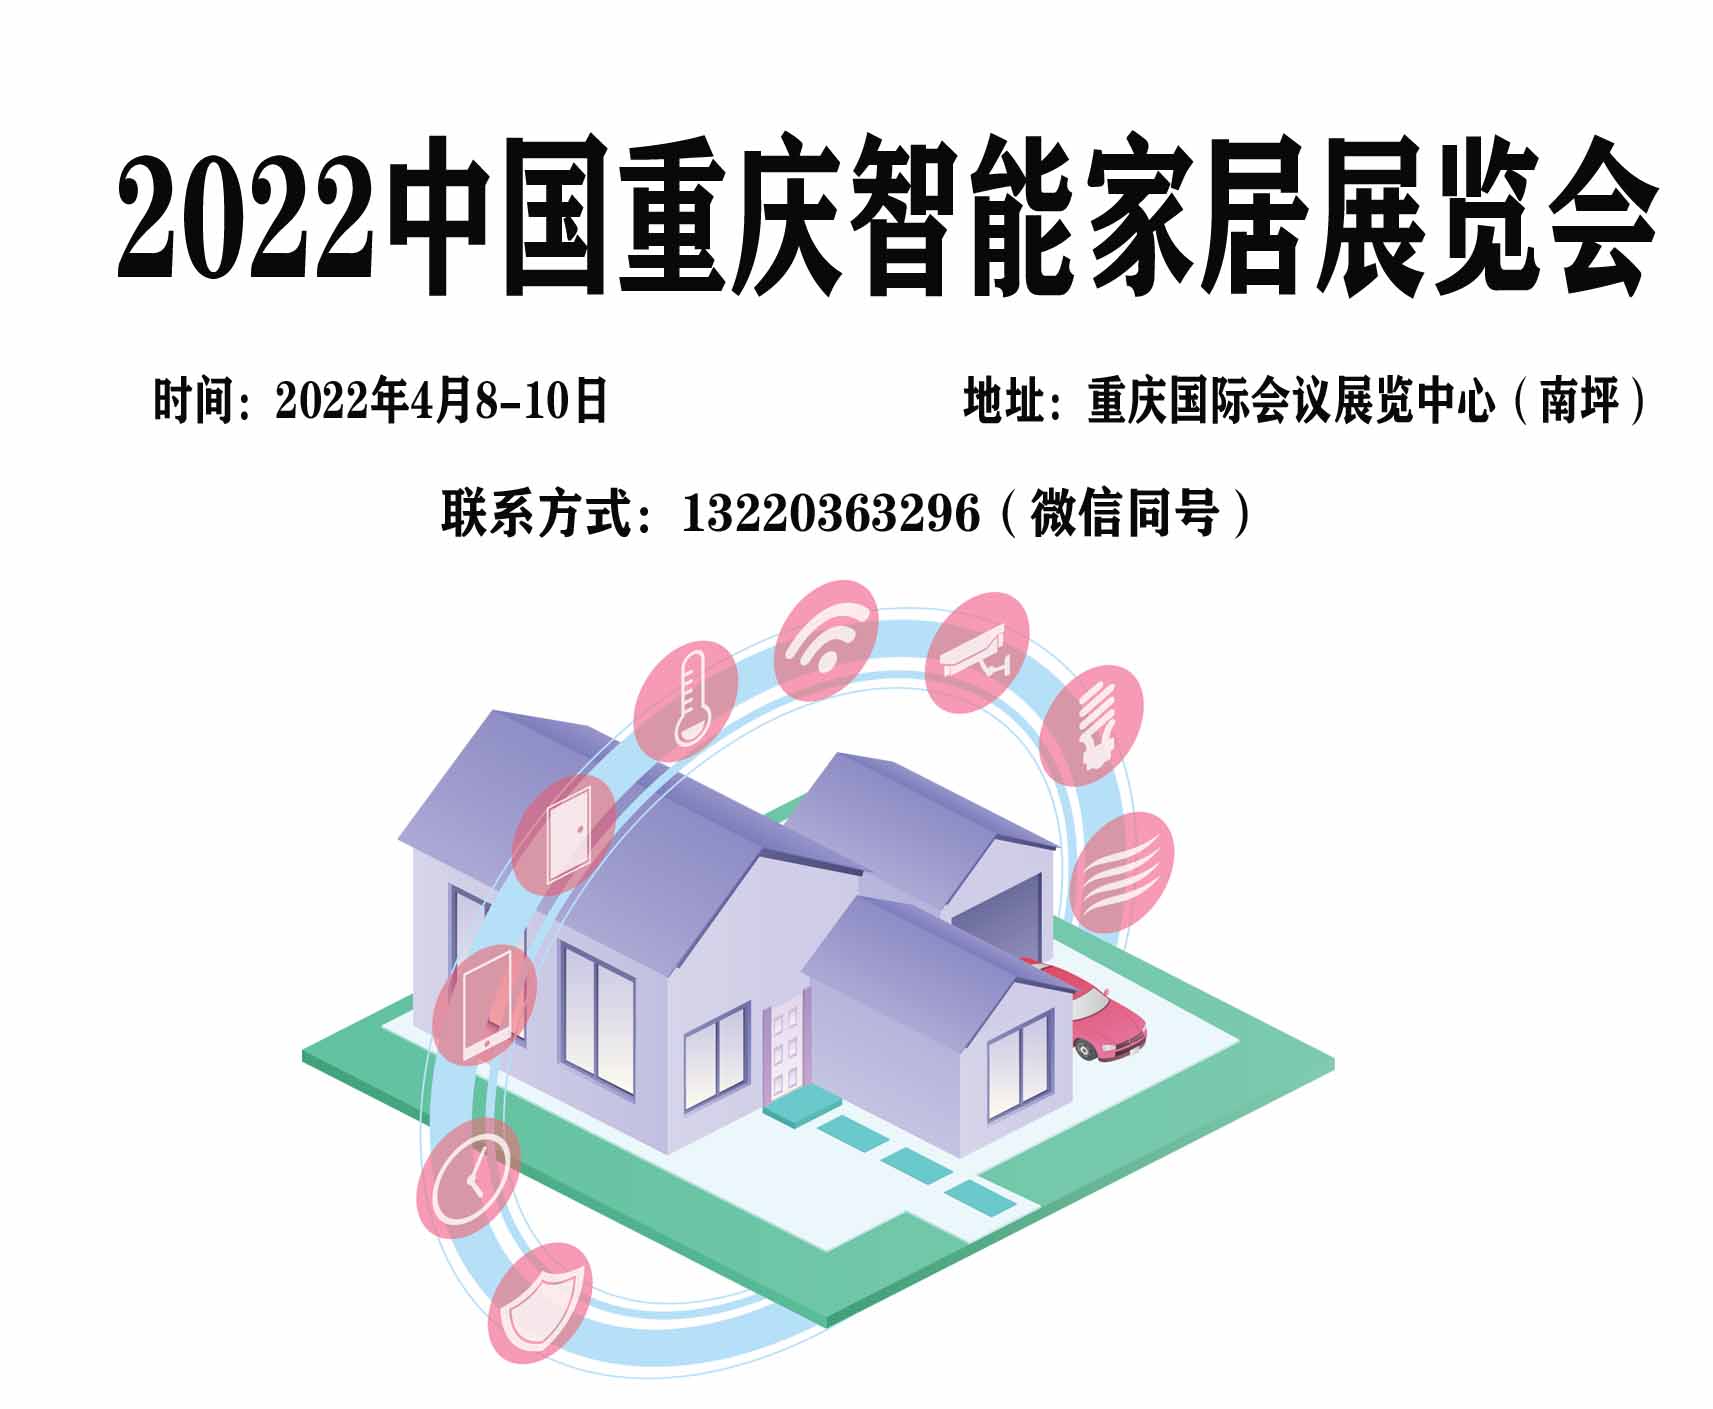 2022中国重庆智能家居博览会